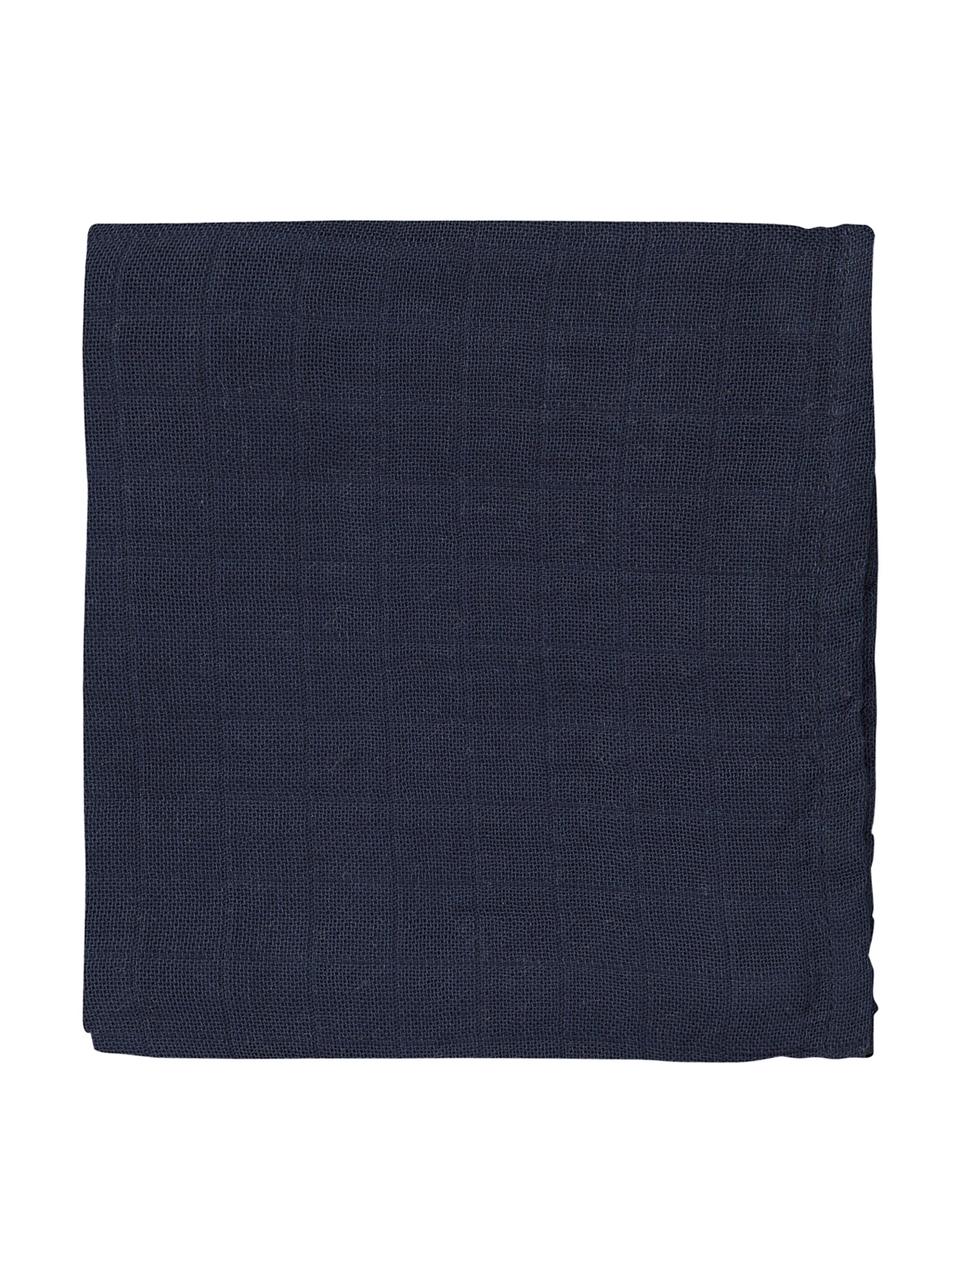 Pañales de tela Muslin, 2 uds., 100% algodón ecológico, Azul oscuro, An 70 x L 70 cm